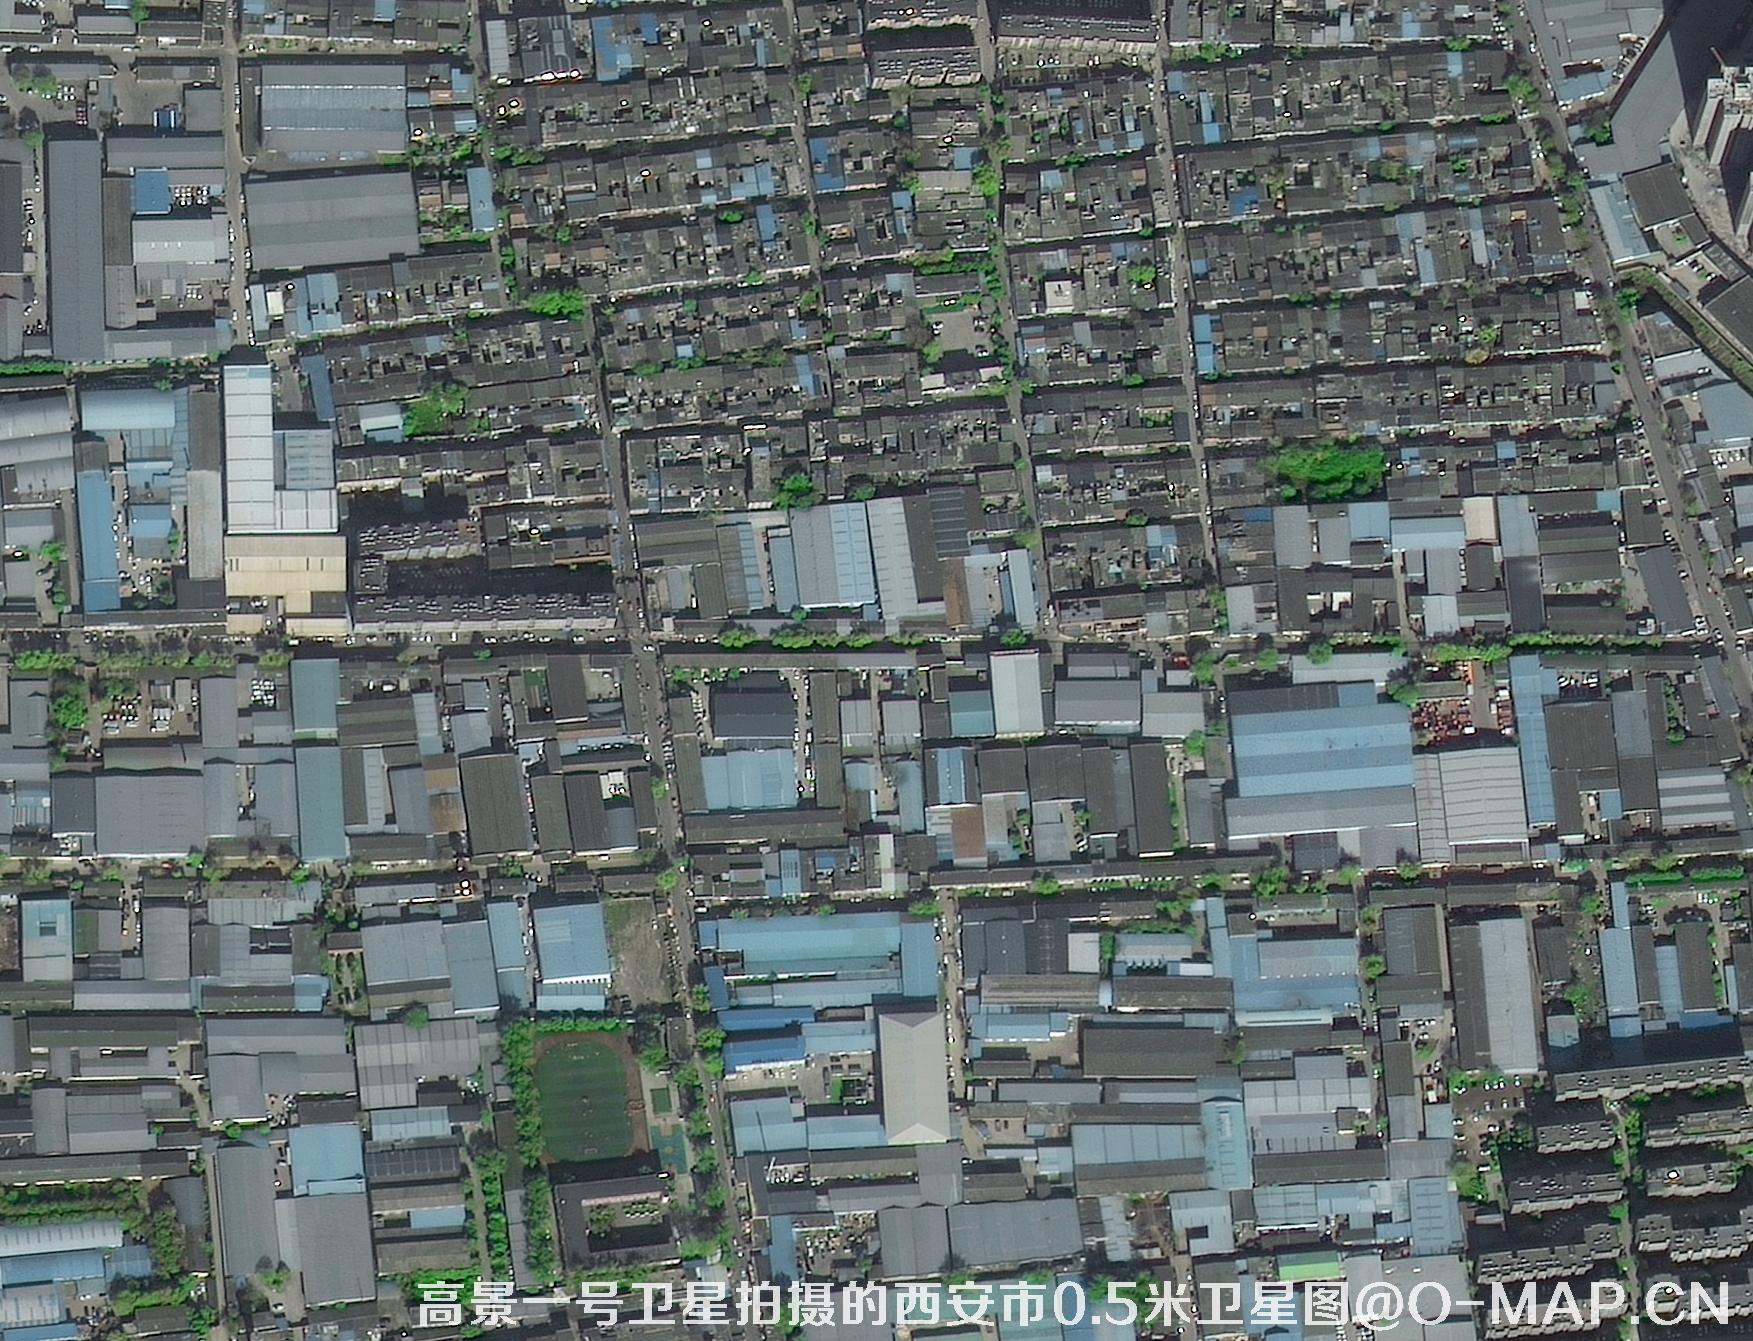 0.5米分辨率卫星图样图-用于景区景点地图